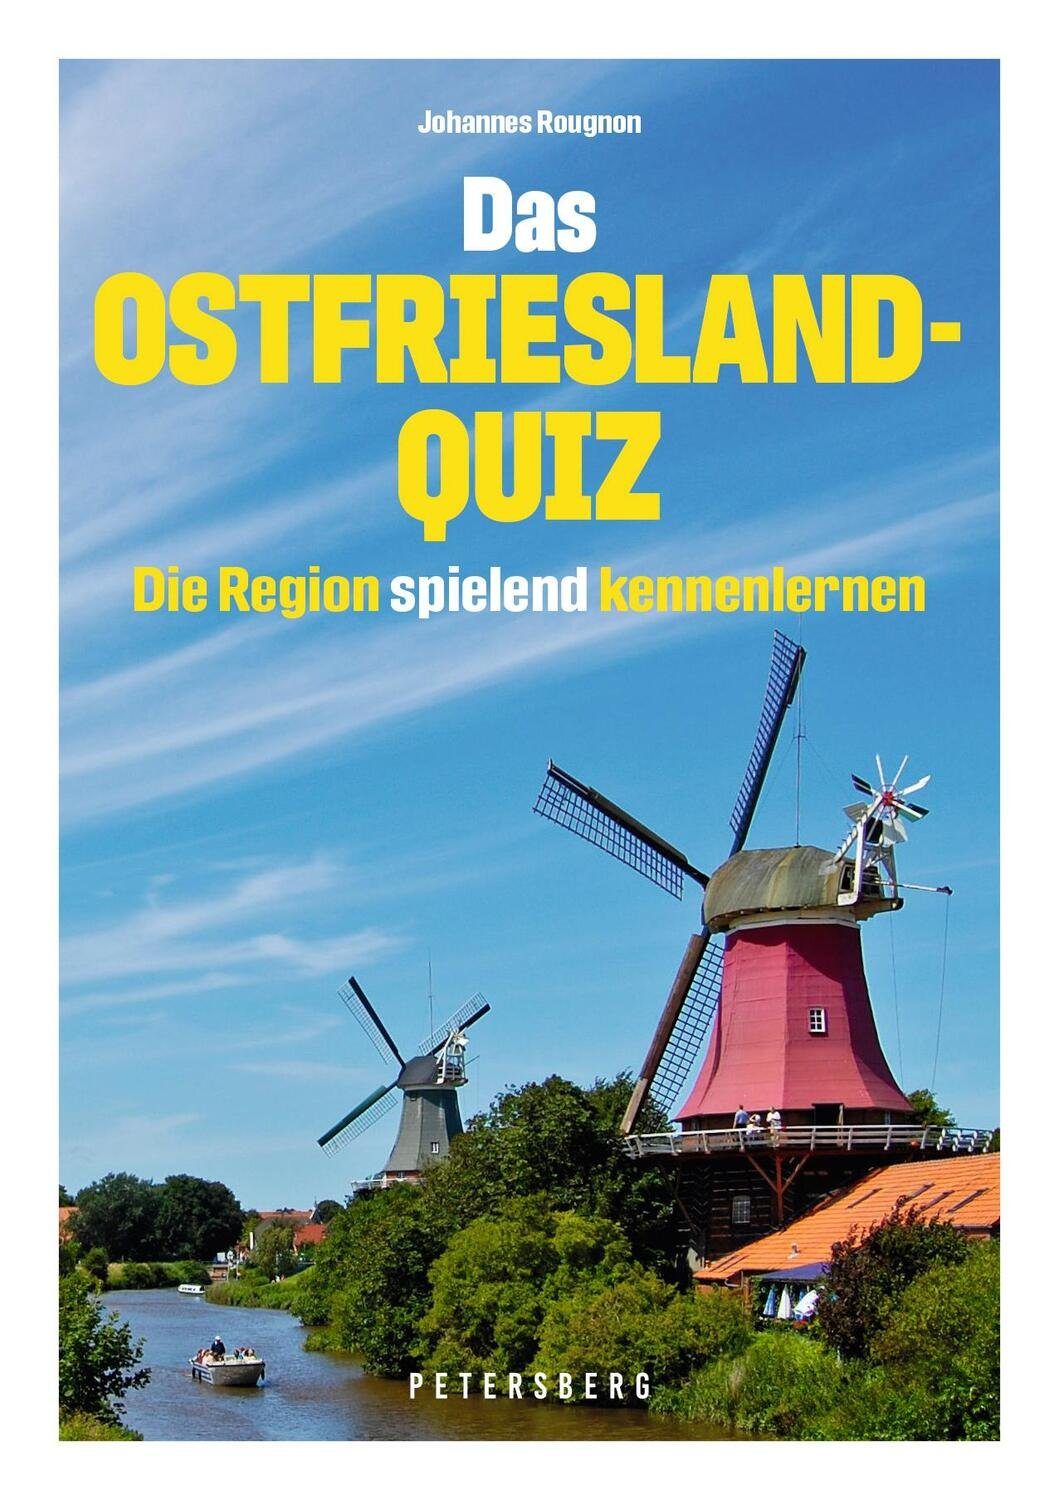 Ostfriesland-Quiz 100 - Das Antworten und Spiel, Fragen